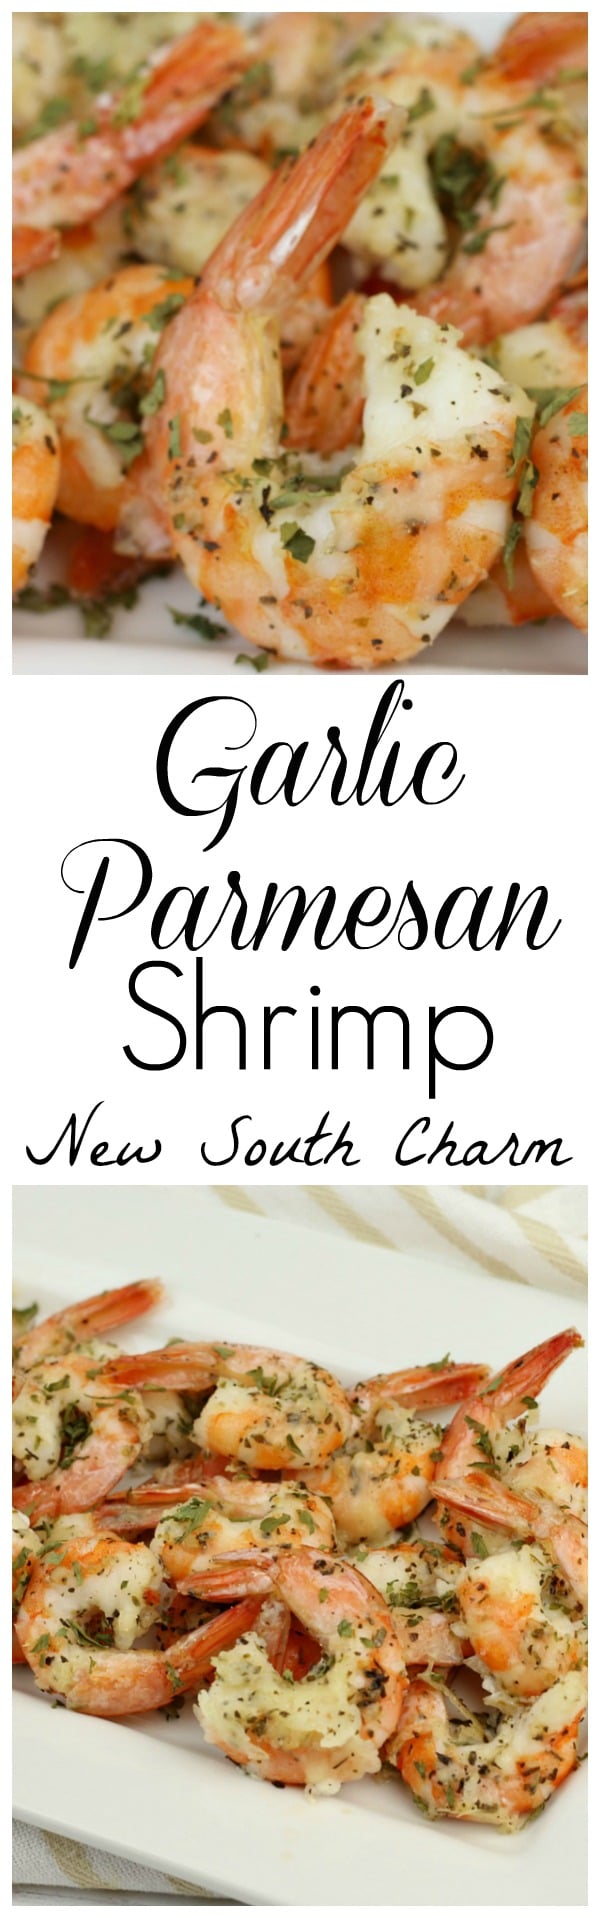 garlic-parmesan-shrimp